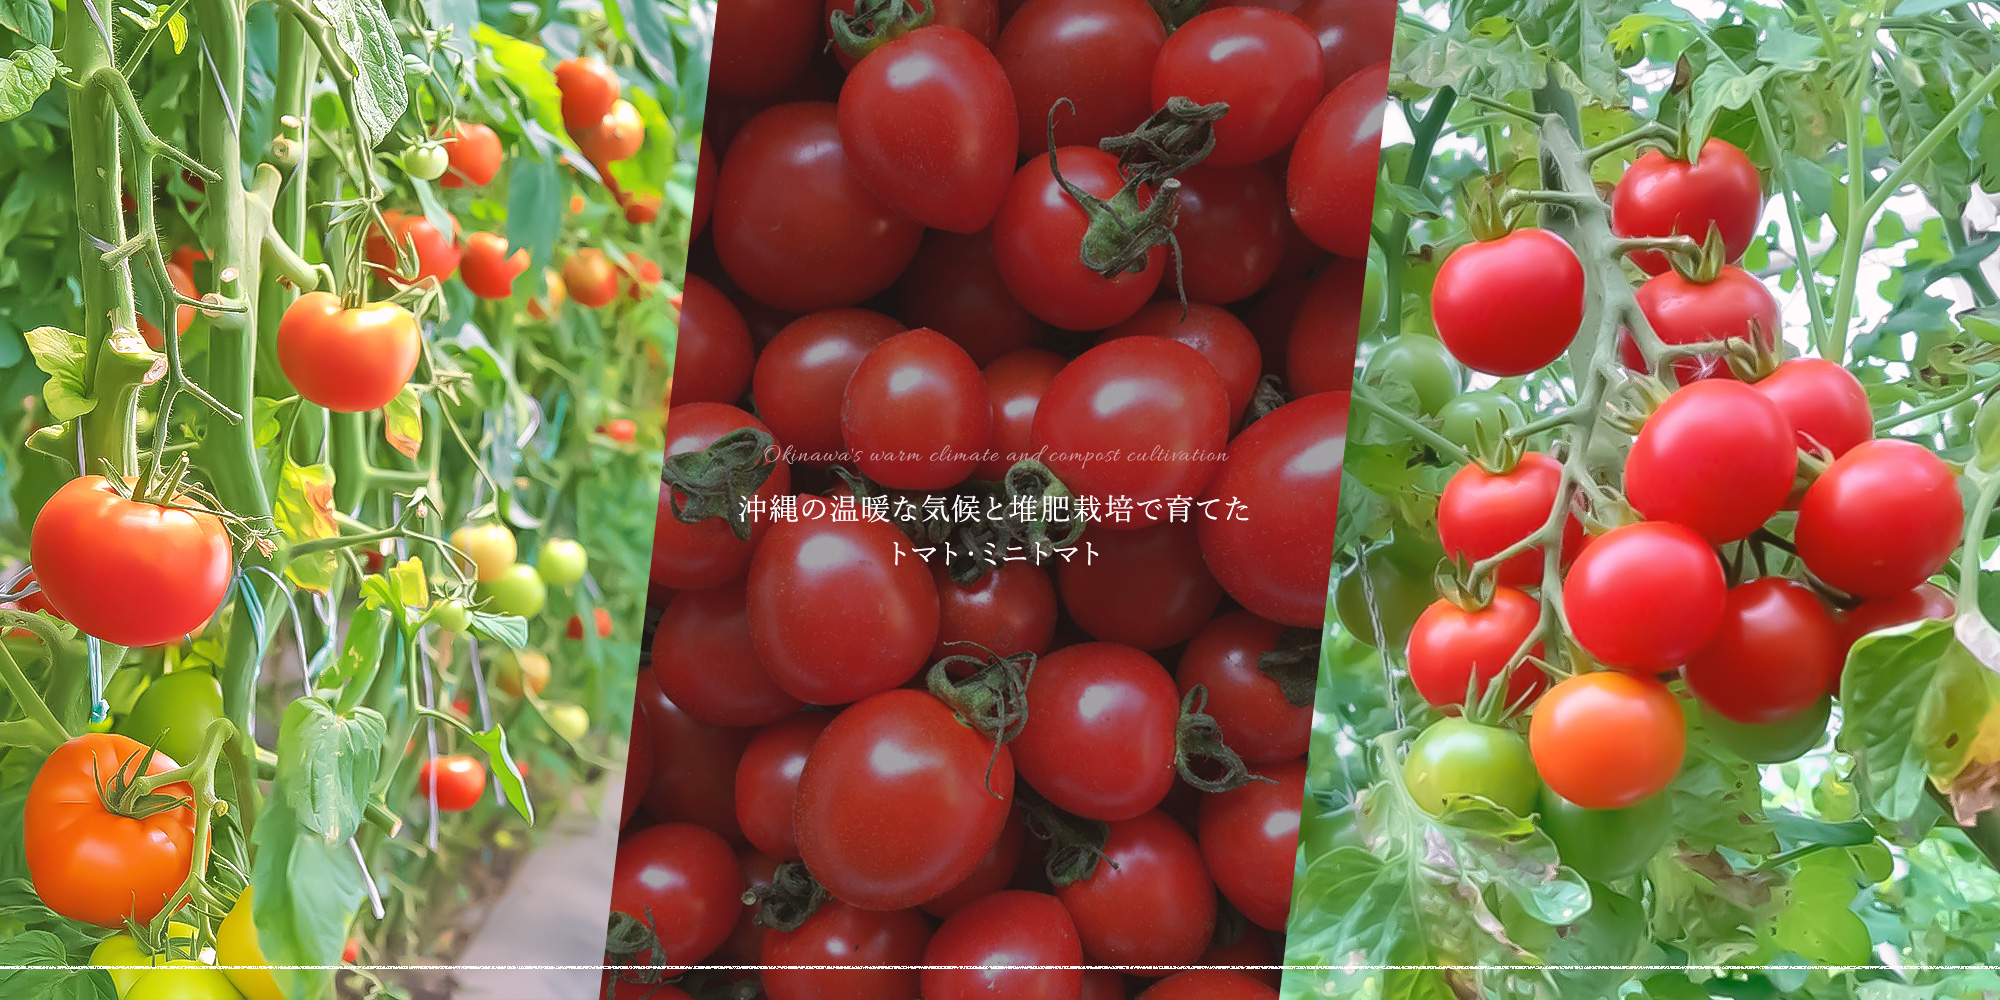 沖縄の温暖な気候と堆肥栽培で育てたトマト・ミニトマト